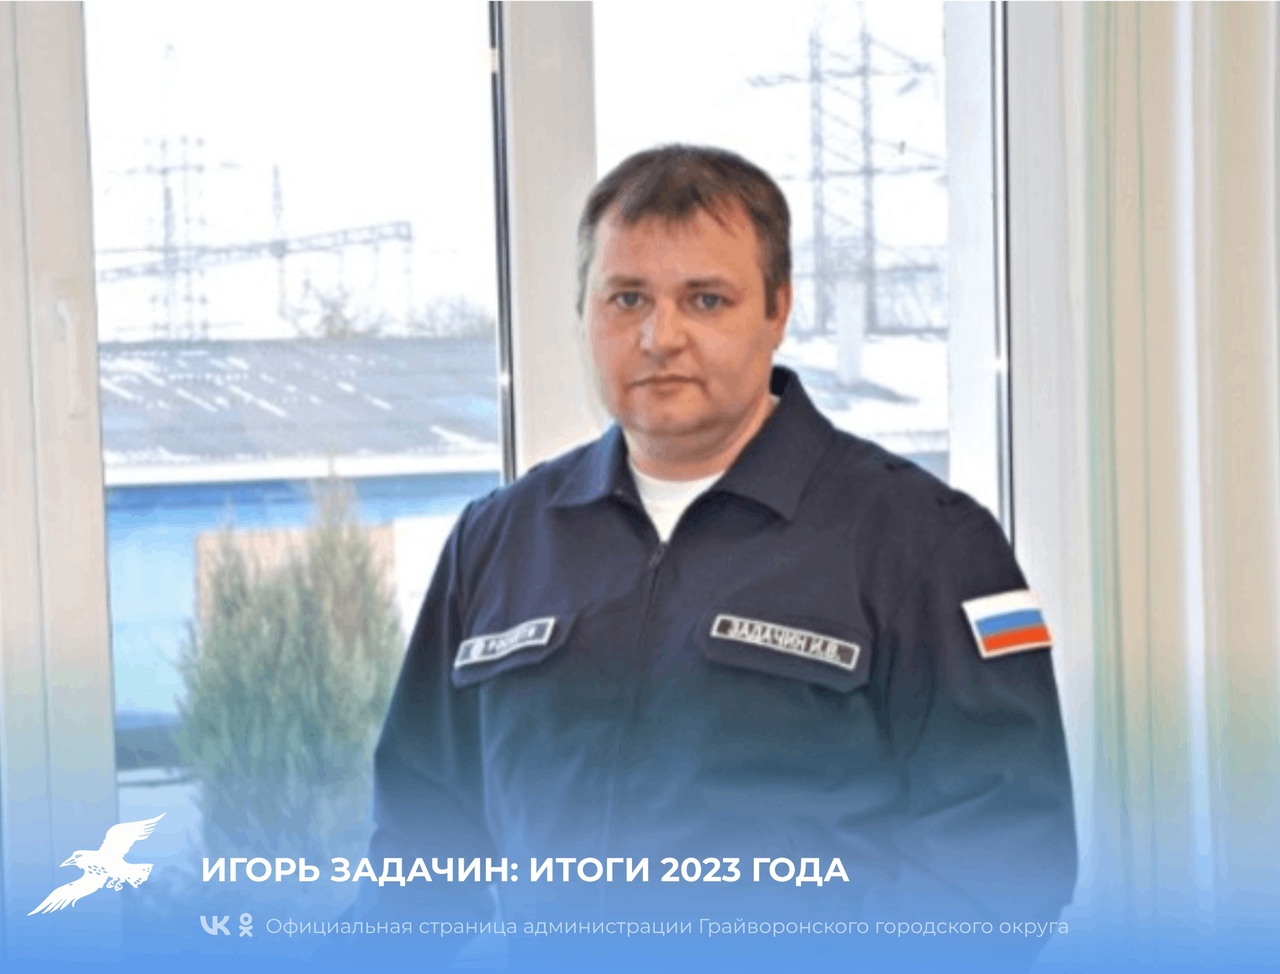 Начальник Грайворонского РЭС Игорь Задачин подвёл итоги 2023 года.